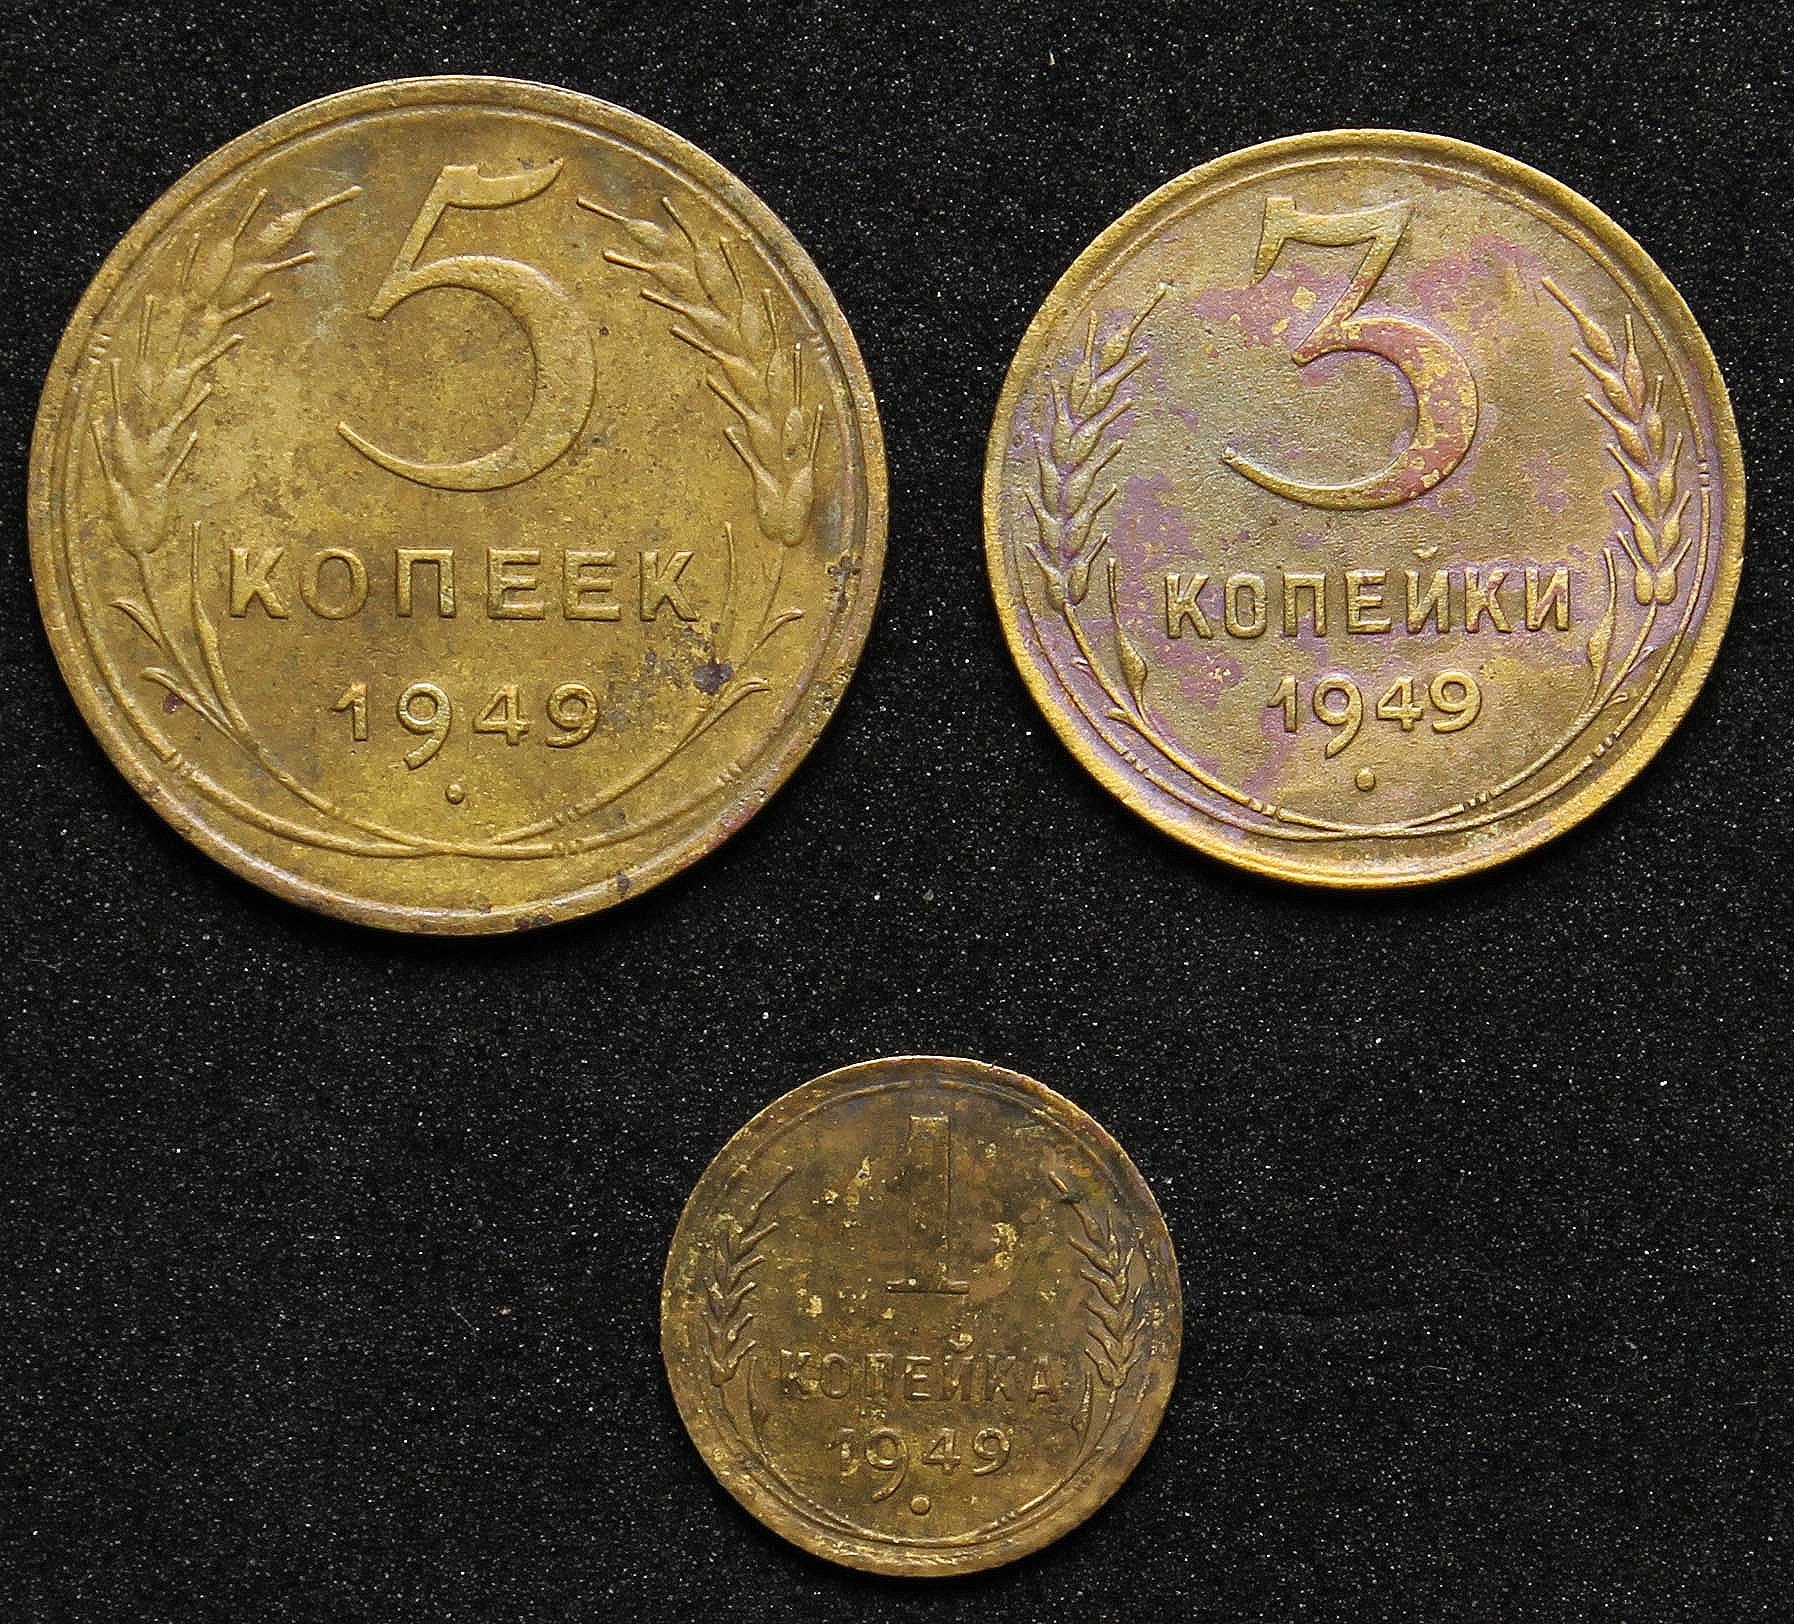 5 копеек 1949 года. Монеты 80-х. Монеты 1 2 5 10 рублей. Vjytnrf c x.